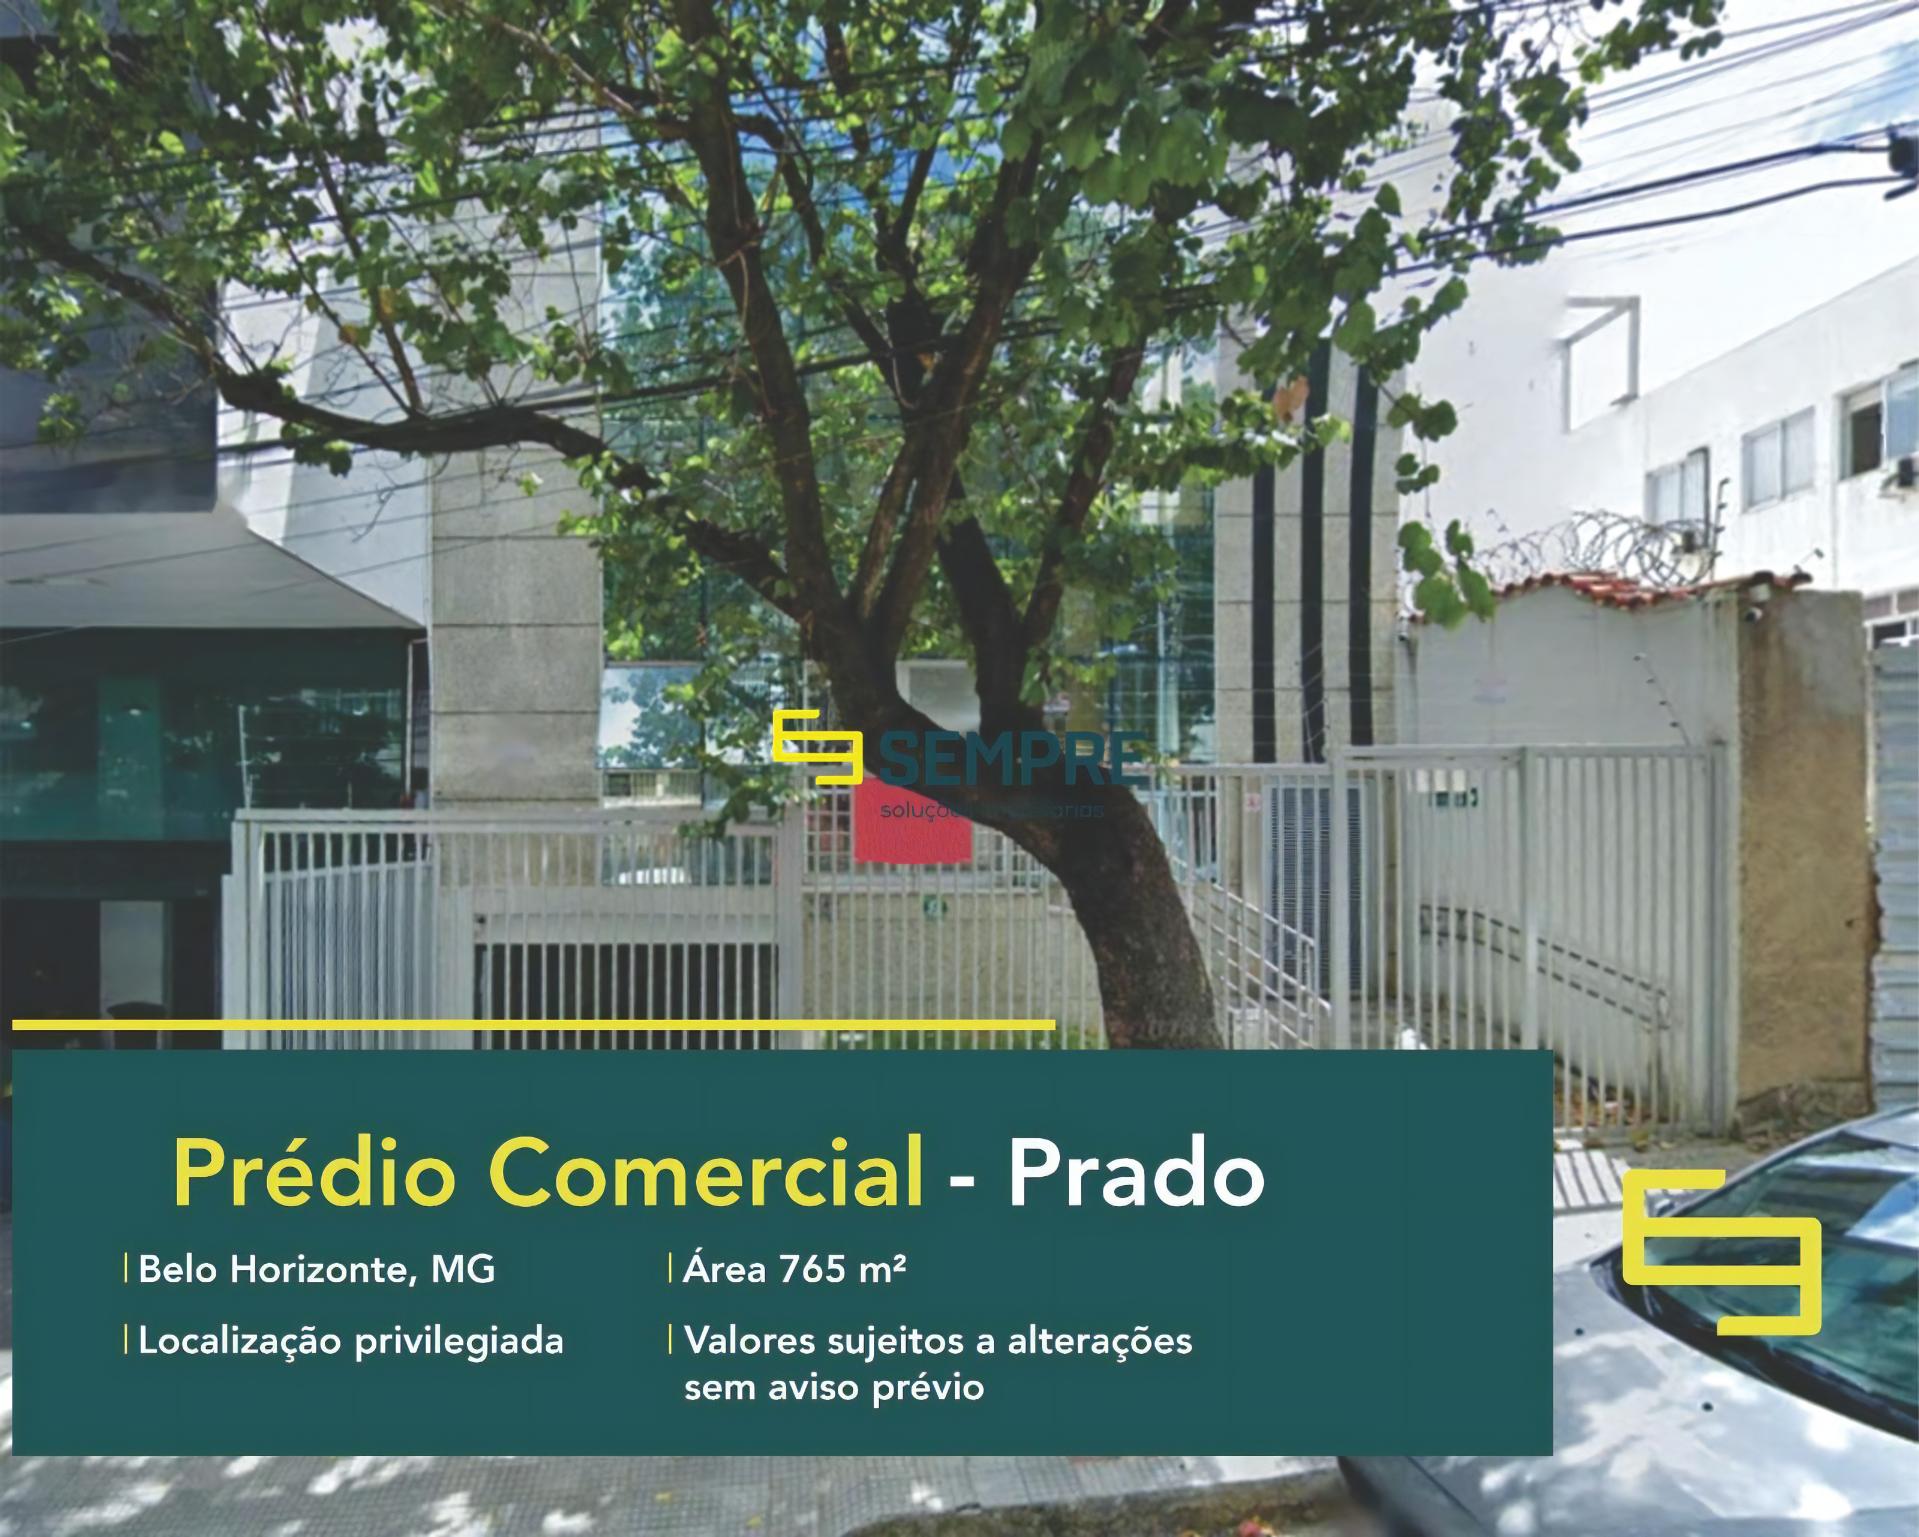 Prédio comercial a venda no Prado em Belo Horizonte, em excelente localização. O estabelecimento comercial conta com área de 765 m².